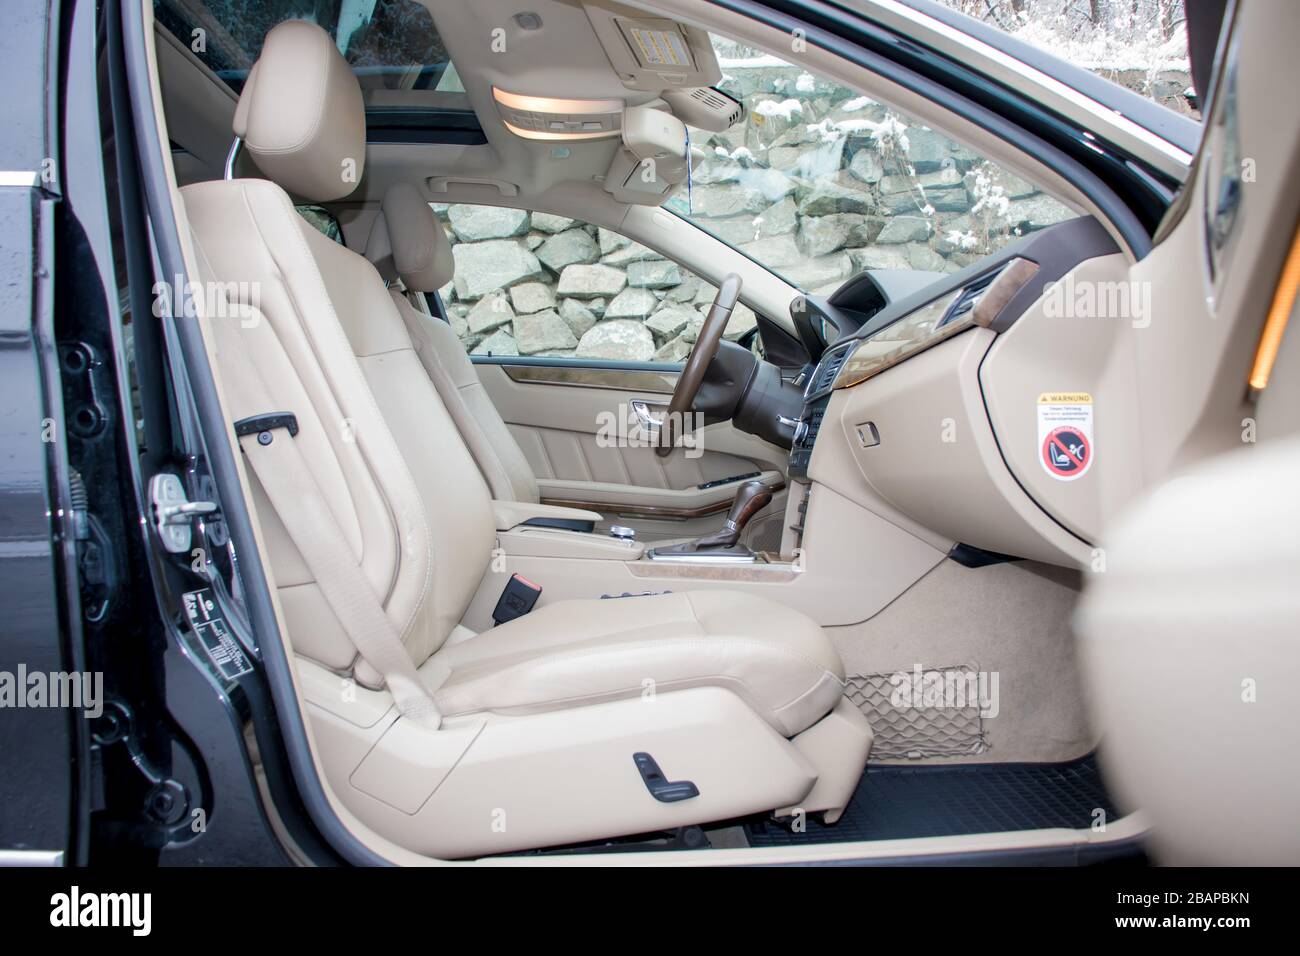 Mercedes Benz W212 - Jahr 2013, Avantgarde-Ausstattung, beigefarbenes Leder Luxus-Interieur - E-Klasse 250 CDI, Sonderanfertigungen - von Mitarbeitern hergestelltes Auto, Stockfoto